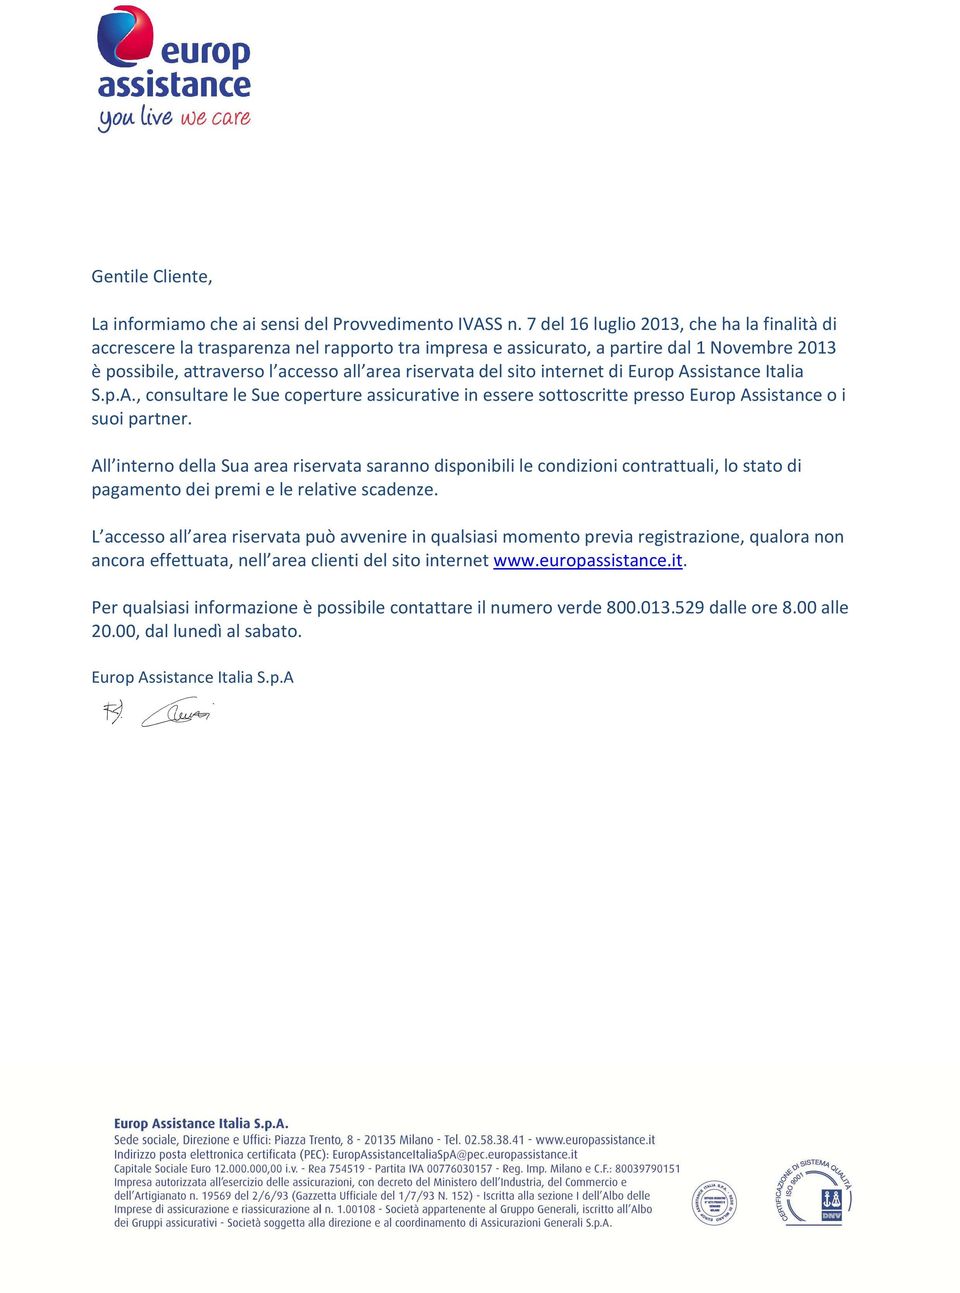 sito internet di Europ Assistance Italia S.p.A., consultare le Sue coperture assicurative in essere sottoscritte presso Europ Assistance o i suoi partner.